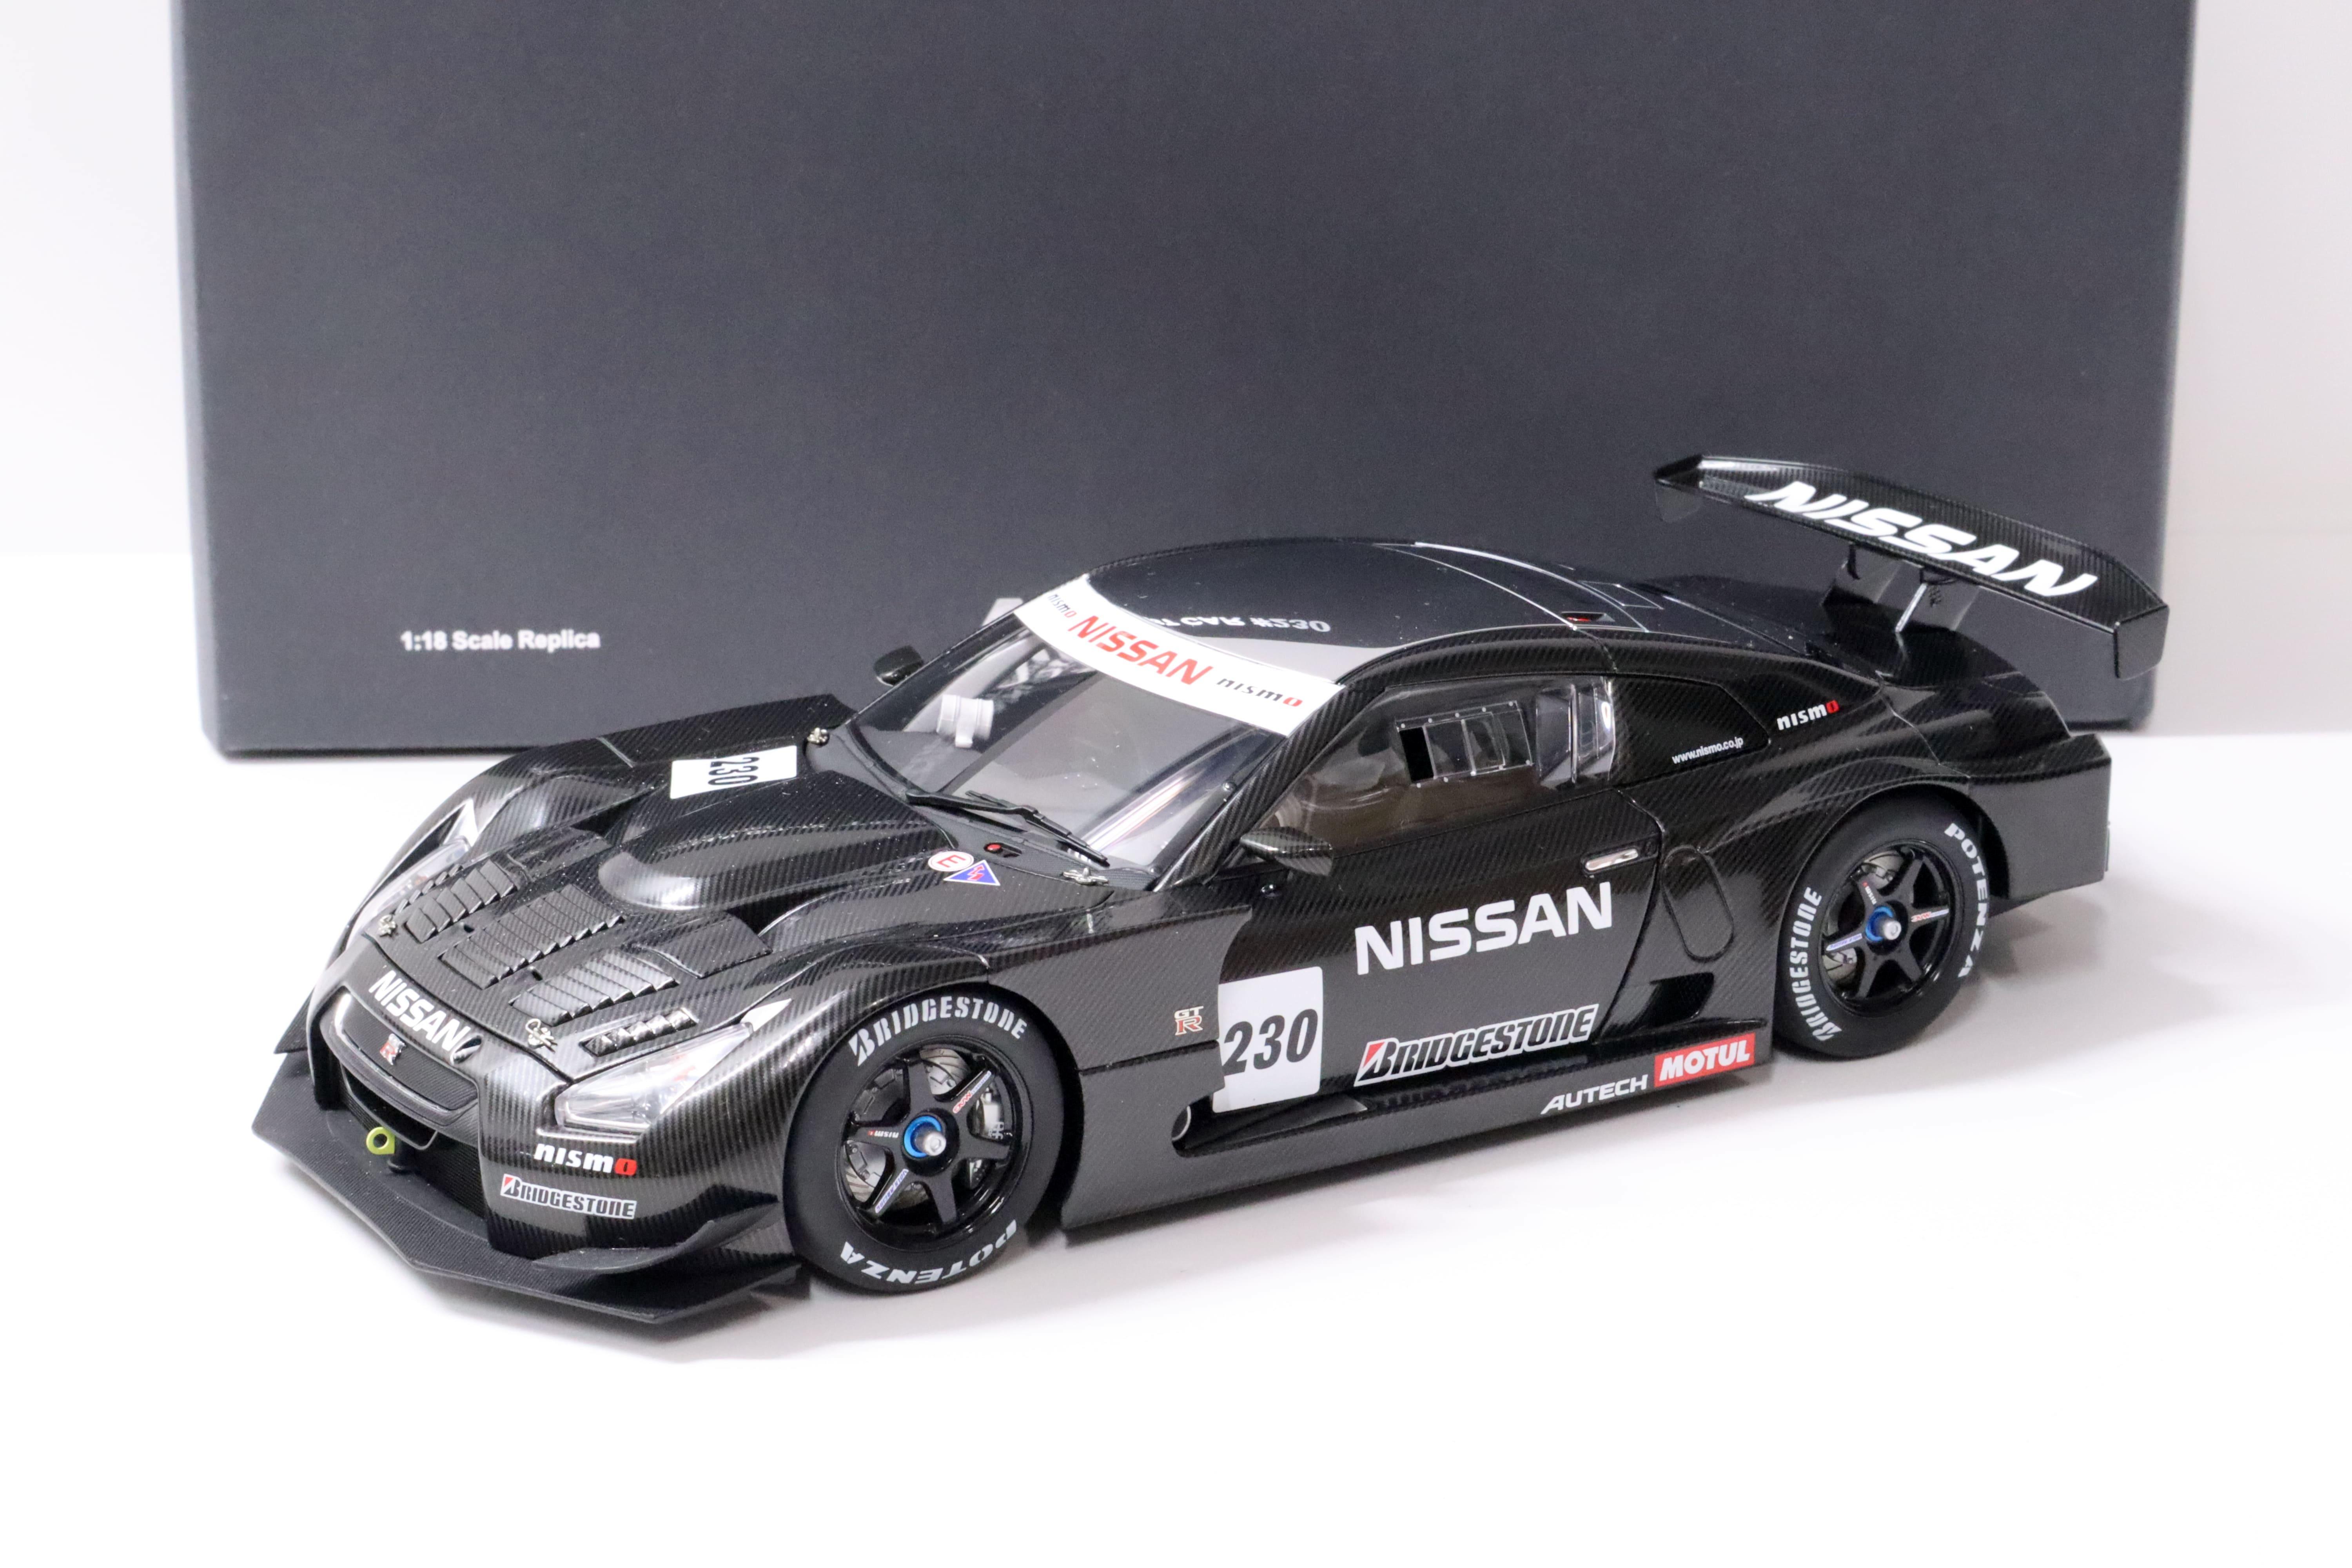 1:18 AUTOart Nissan GT-R Test Car #230 Super GT 2008 Carbon black